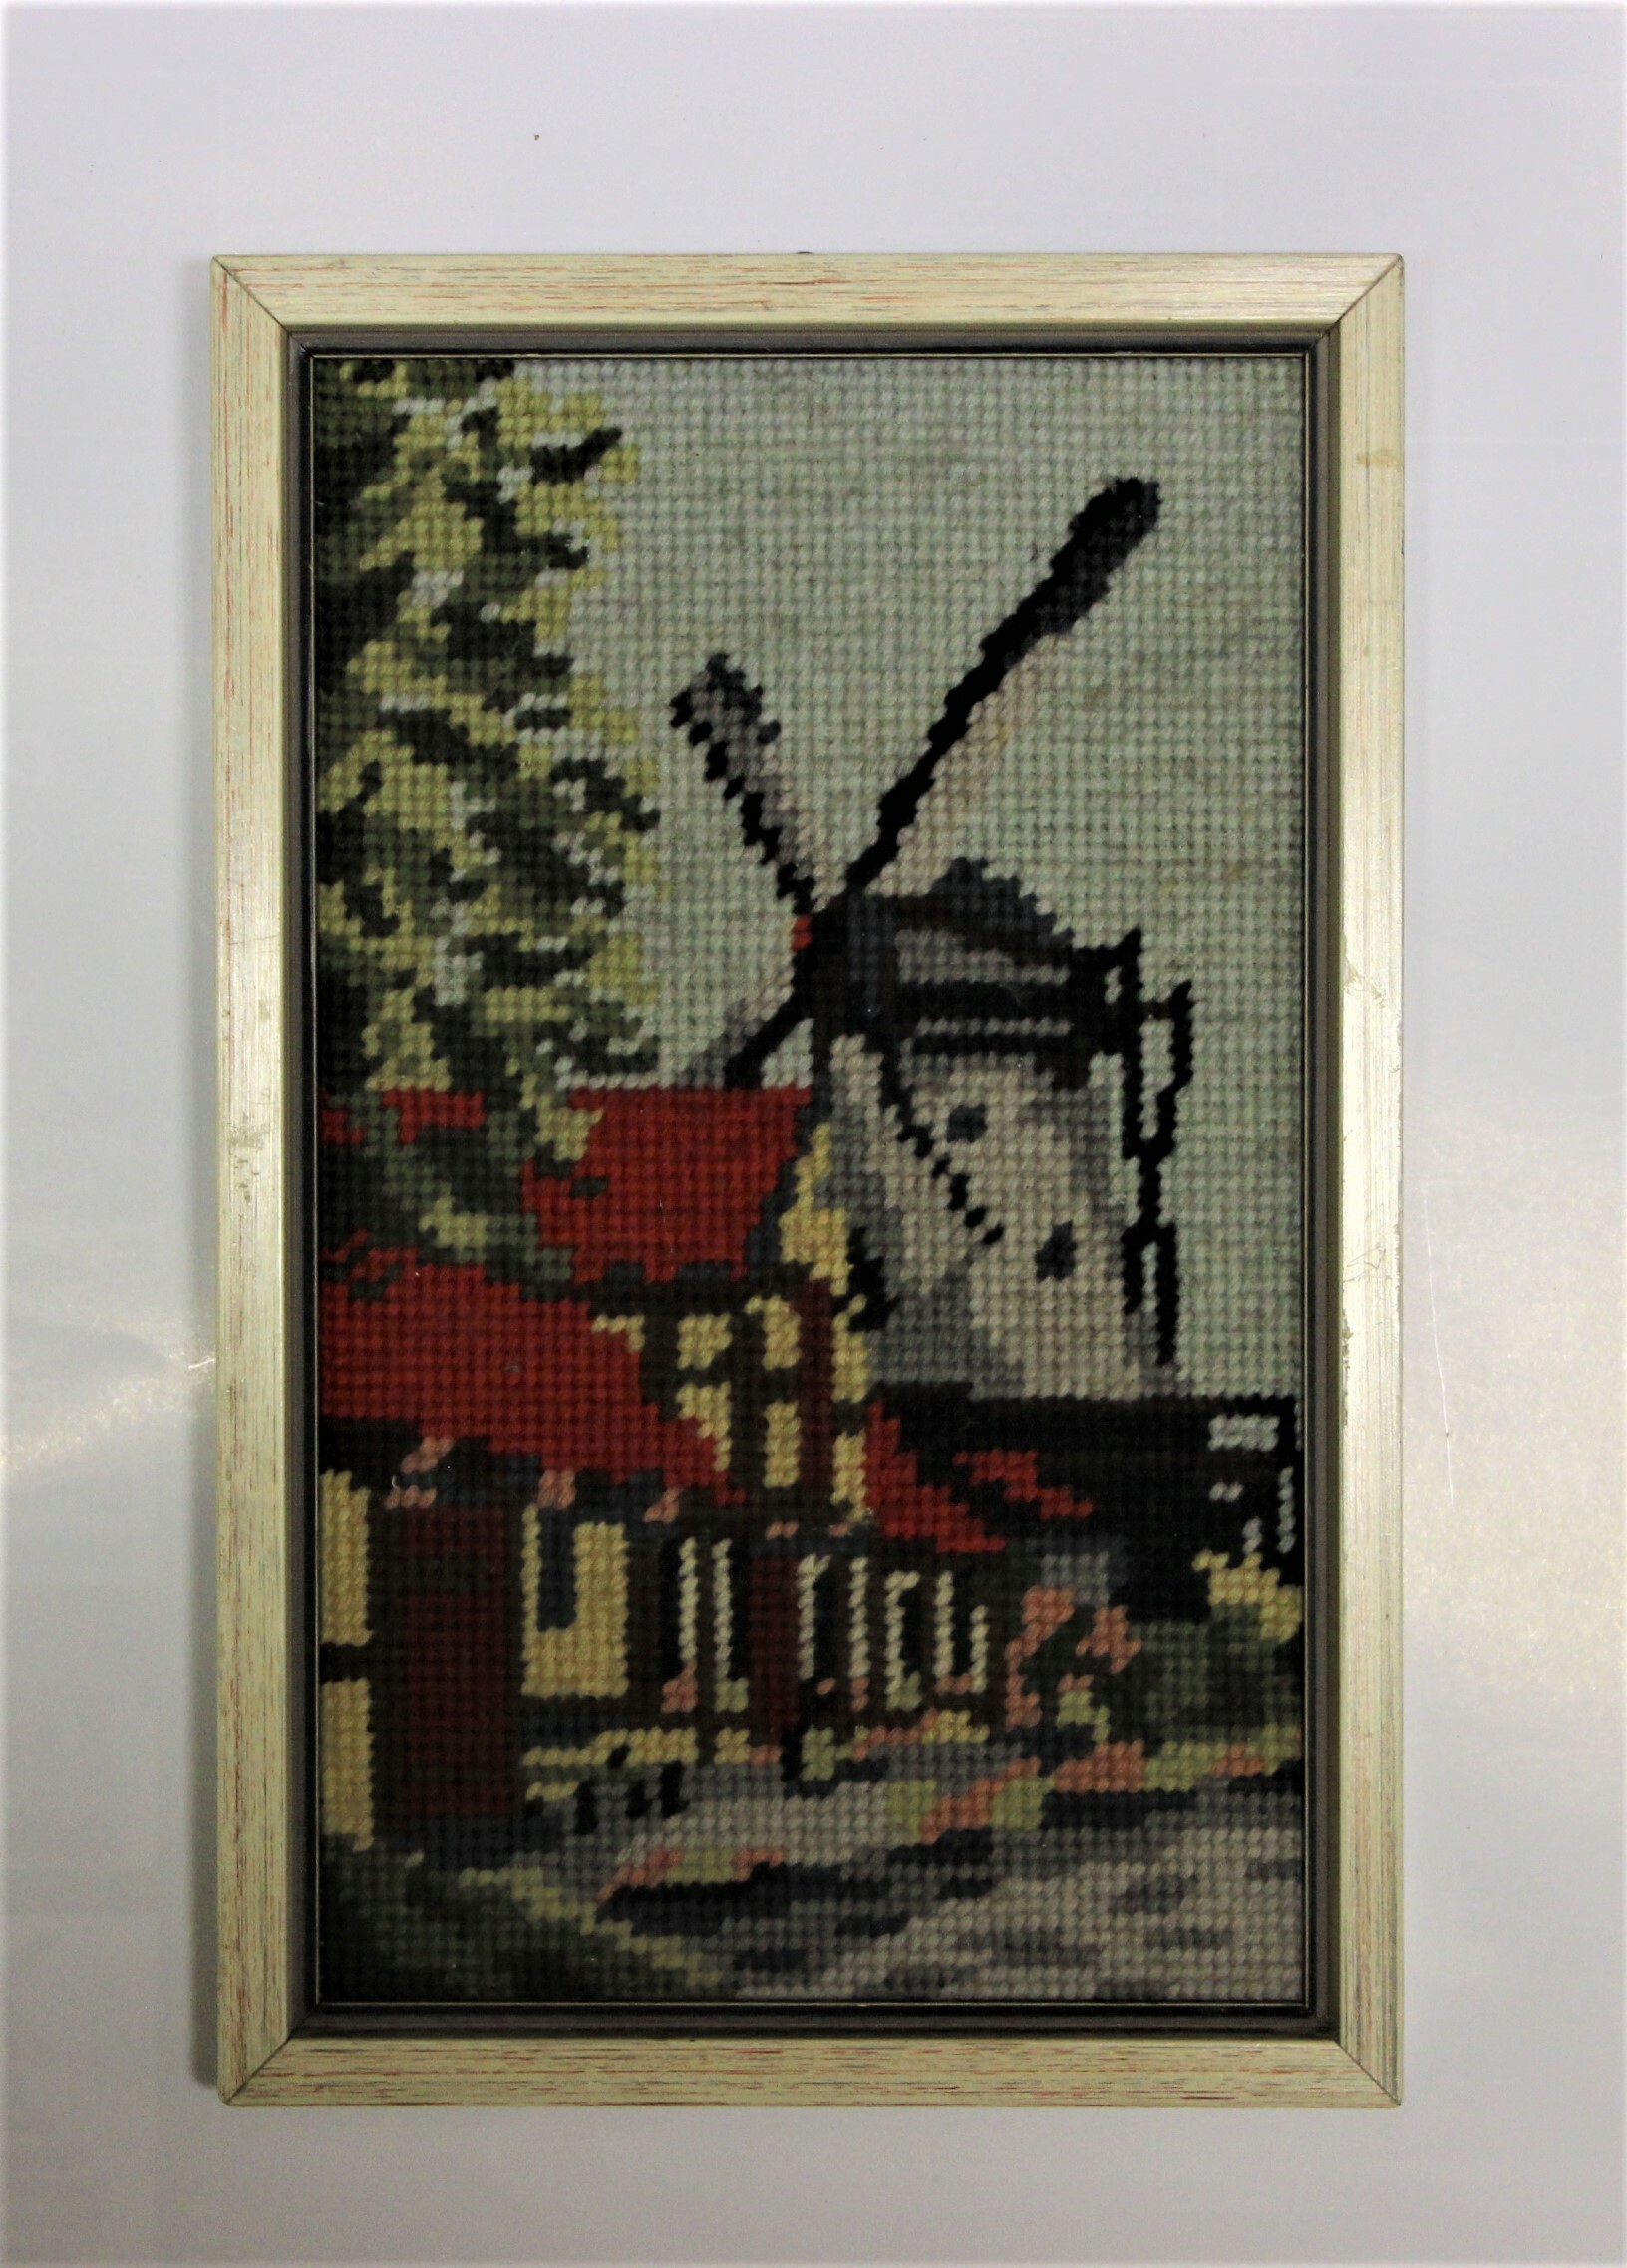 Stickbild einer Galeriewindmühle (Historische Mühle von Sanssouci CC BY-NC-SA)